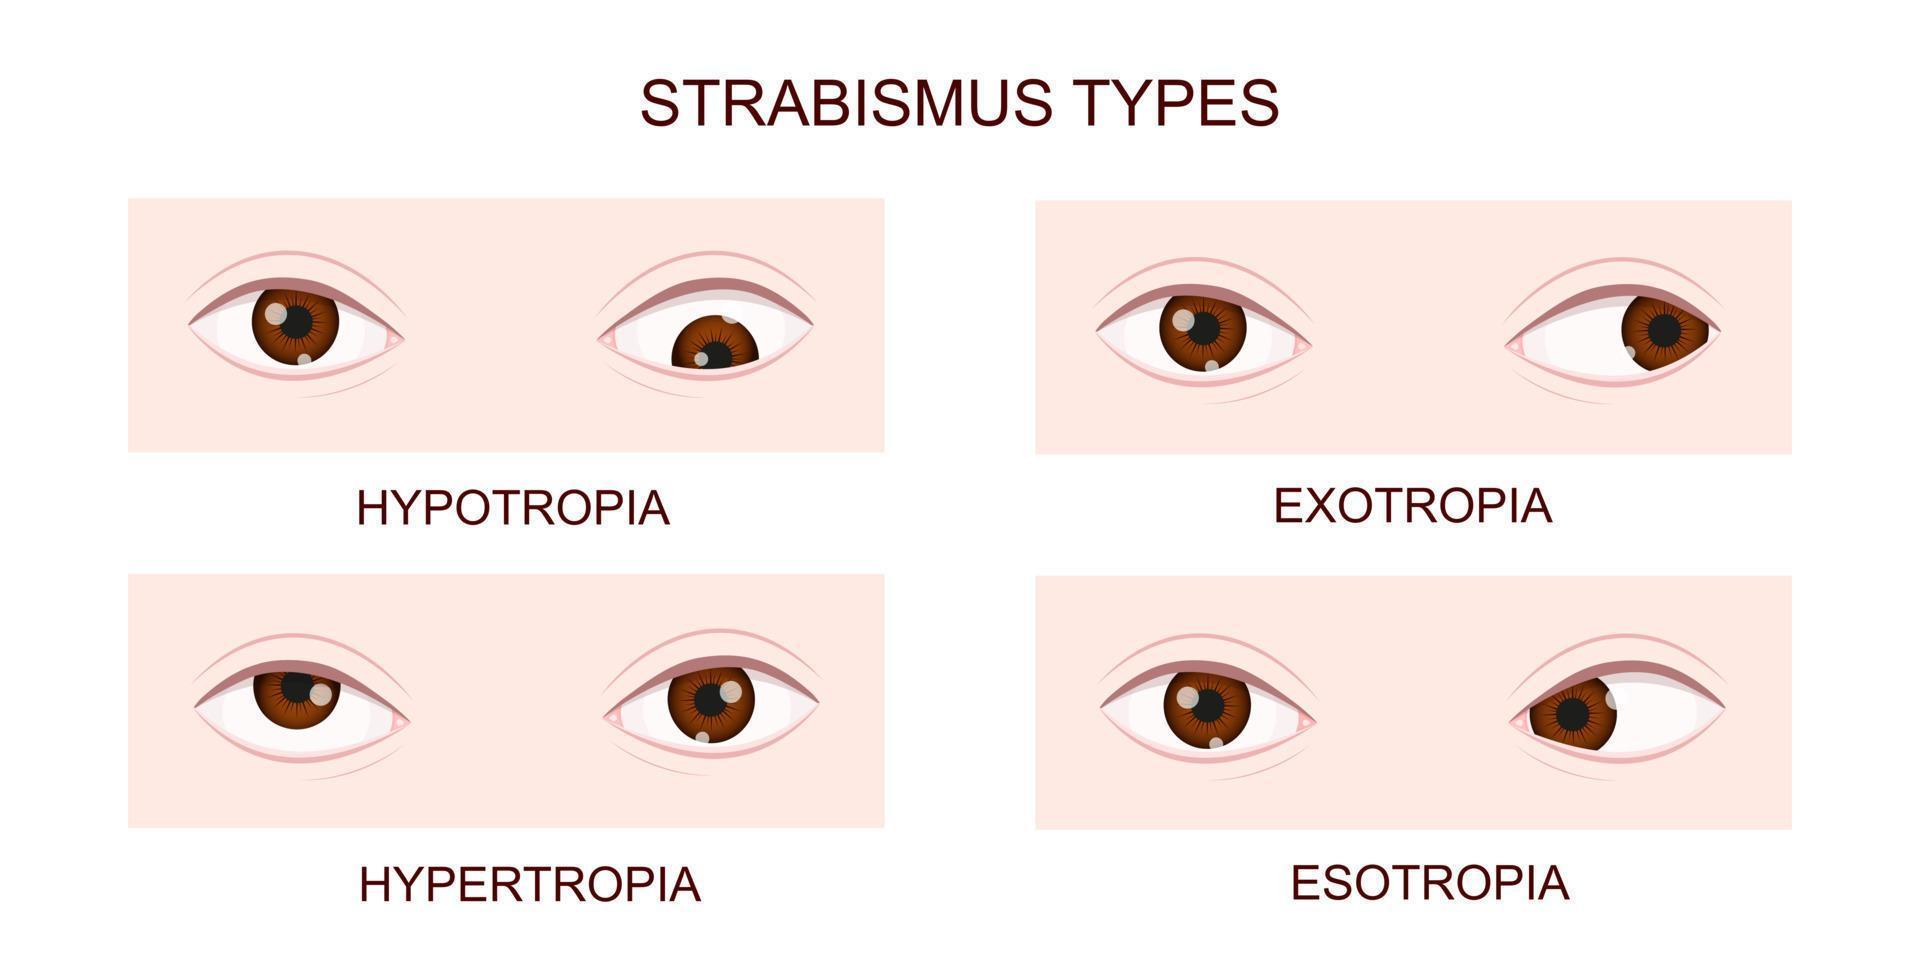 tipos de estrabismo. hipotropia, hipertropia, exotropia, esotropia. olhos humanos com diferentes distúrbios de estrabismo. condição de olhos cruzados vetor